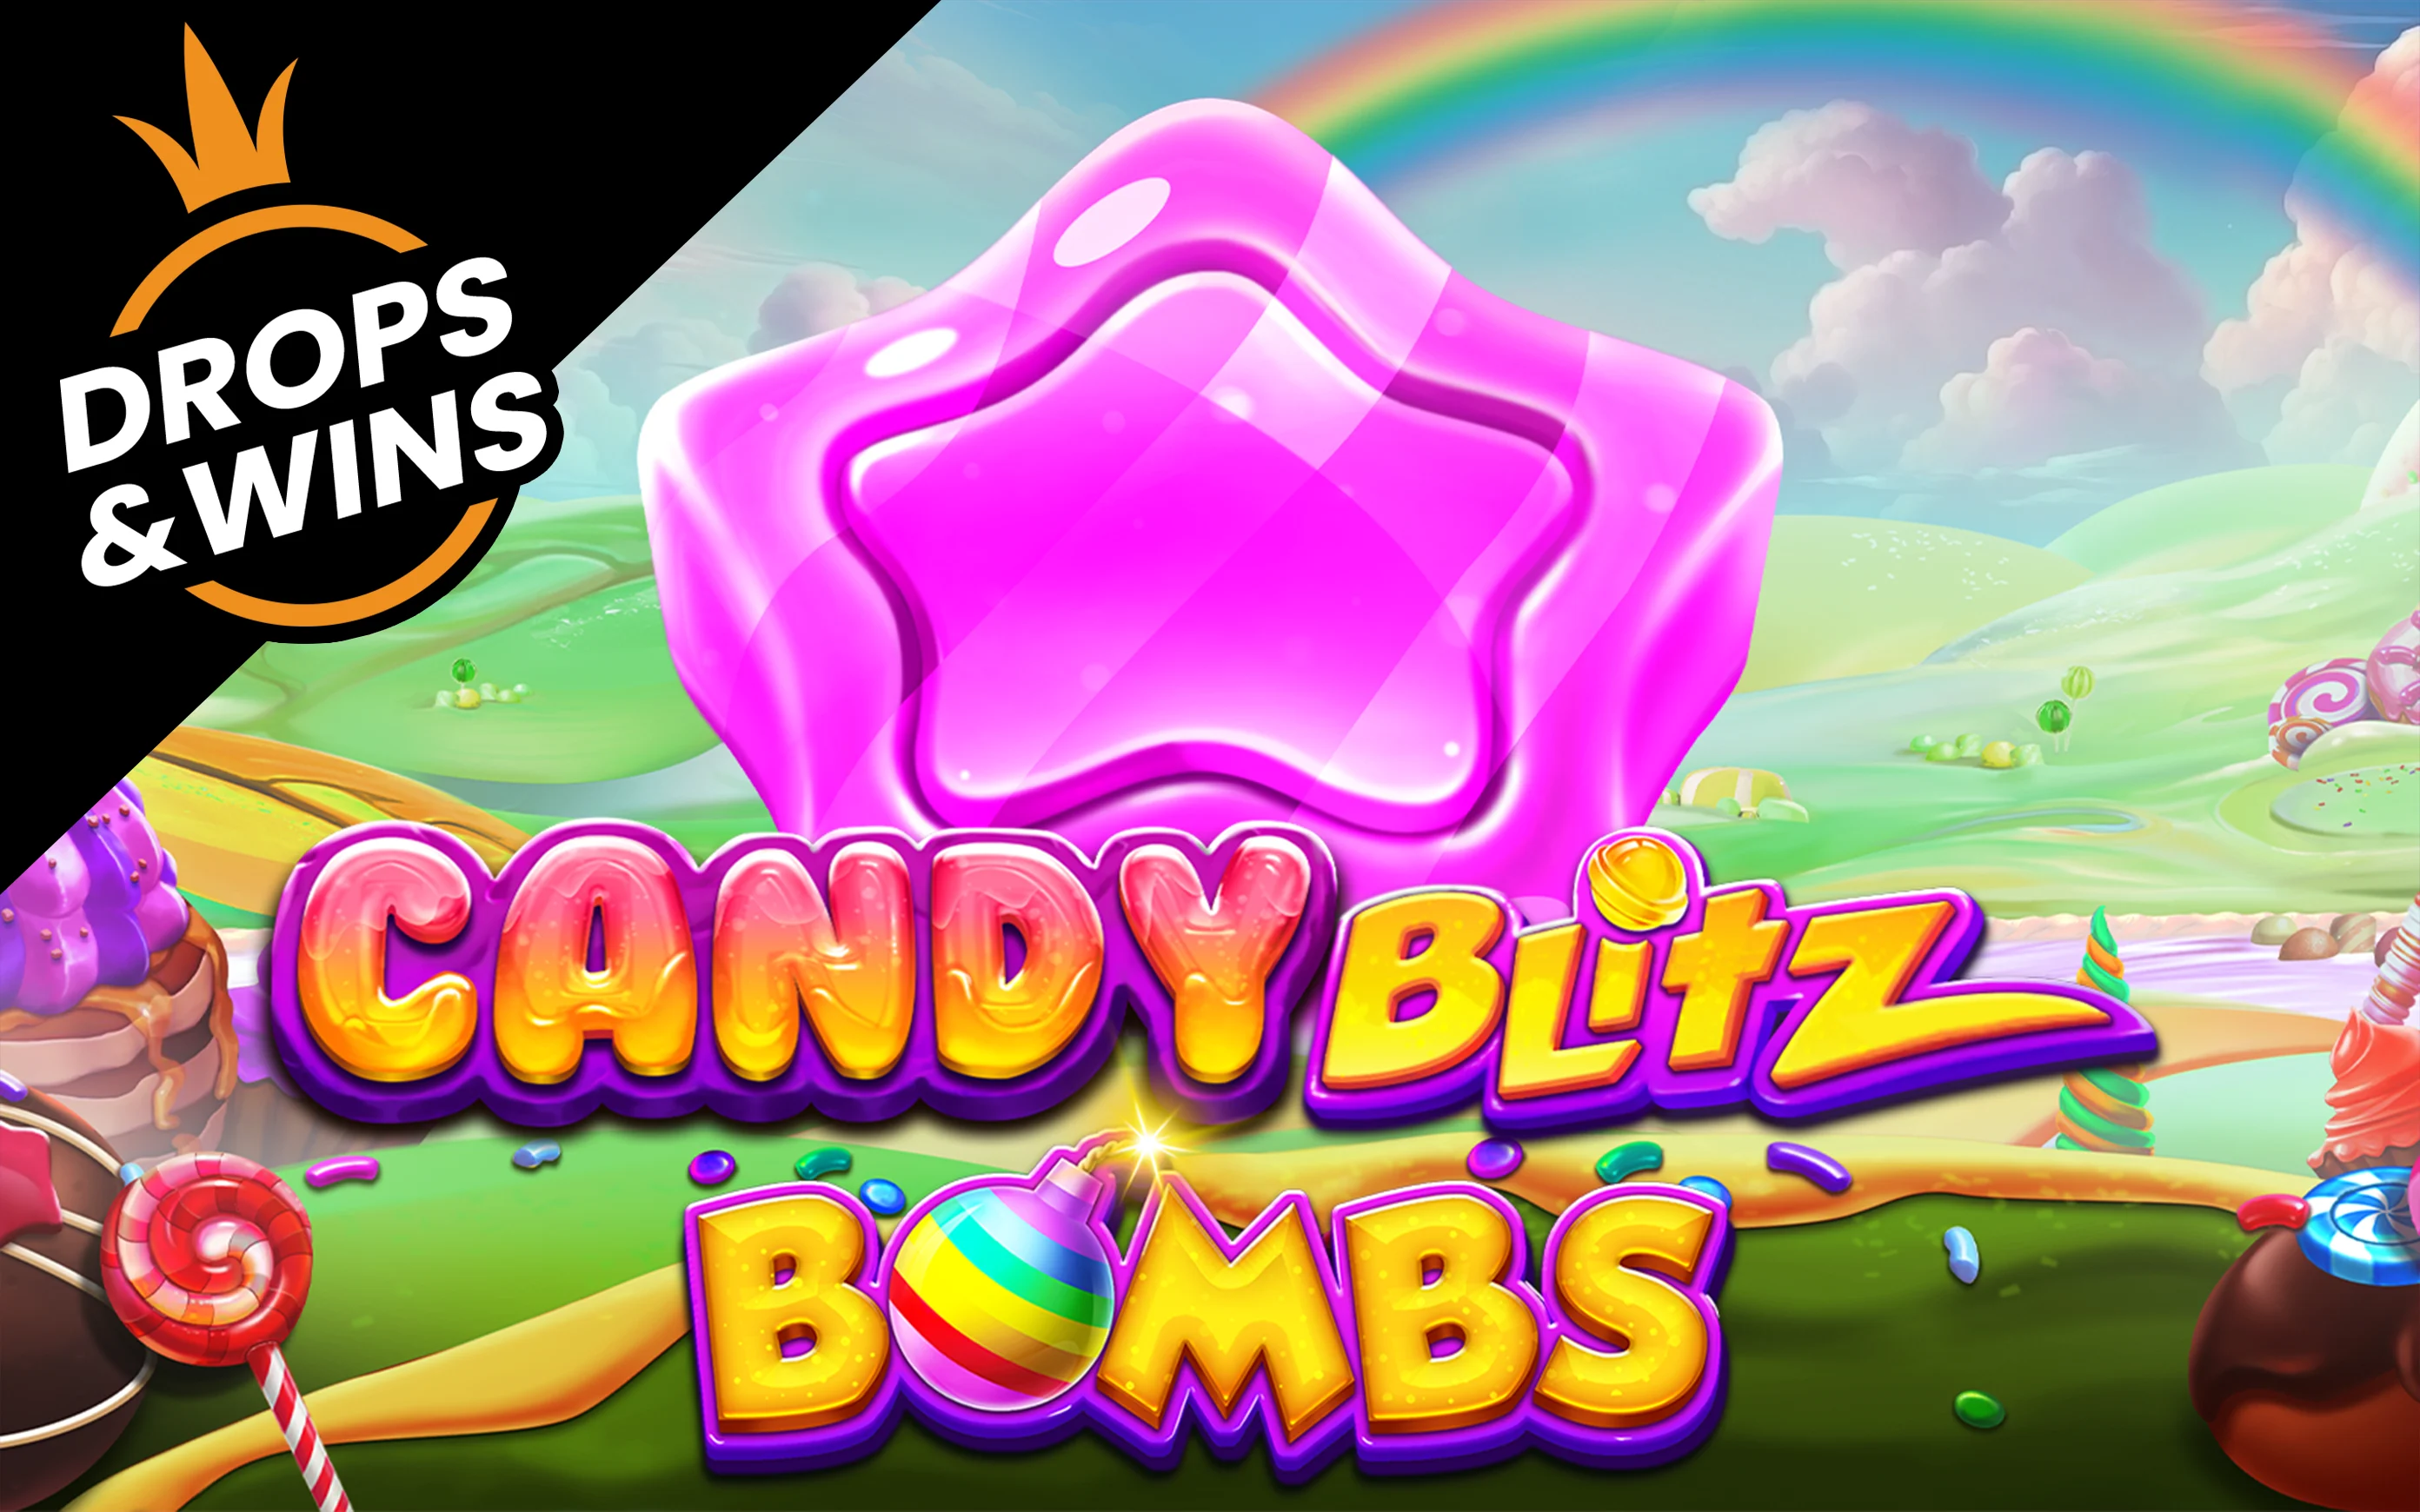 Juega a Candy Blitz Bombs en el casino en línea de Starcasino.be